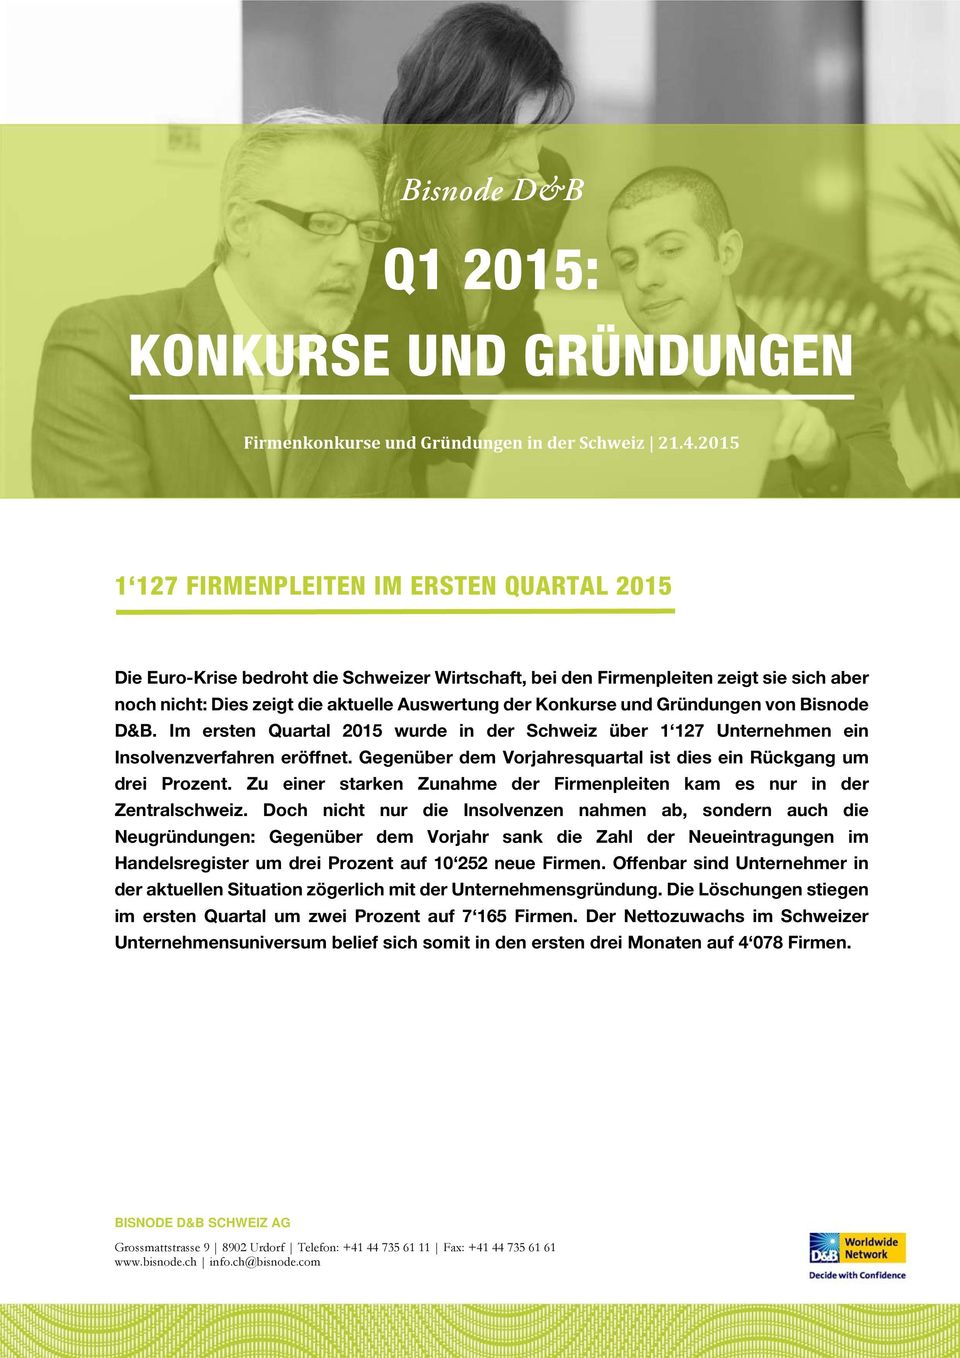 und Gründungen von Bisnode D&B. Im ersten Quartal 2015 wurde in der Schweiz über 1 127 Unternehmen ein Insolvenzverfahren eröffnet.